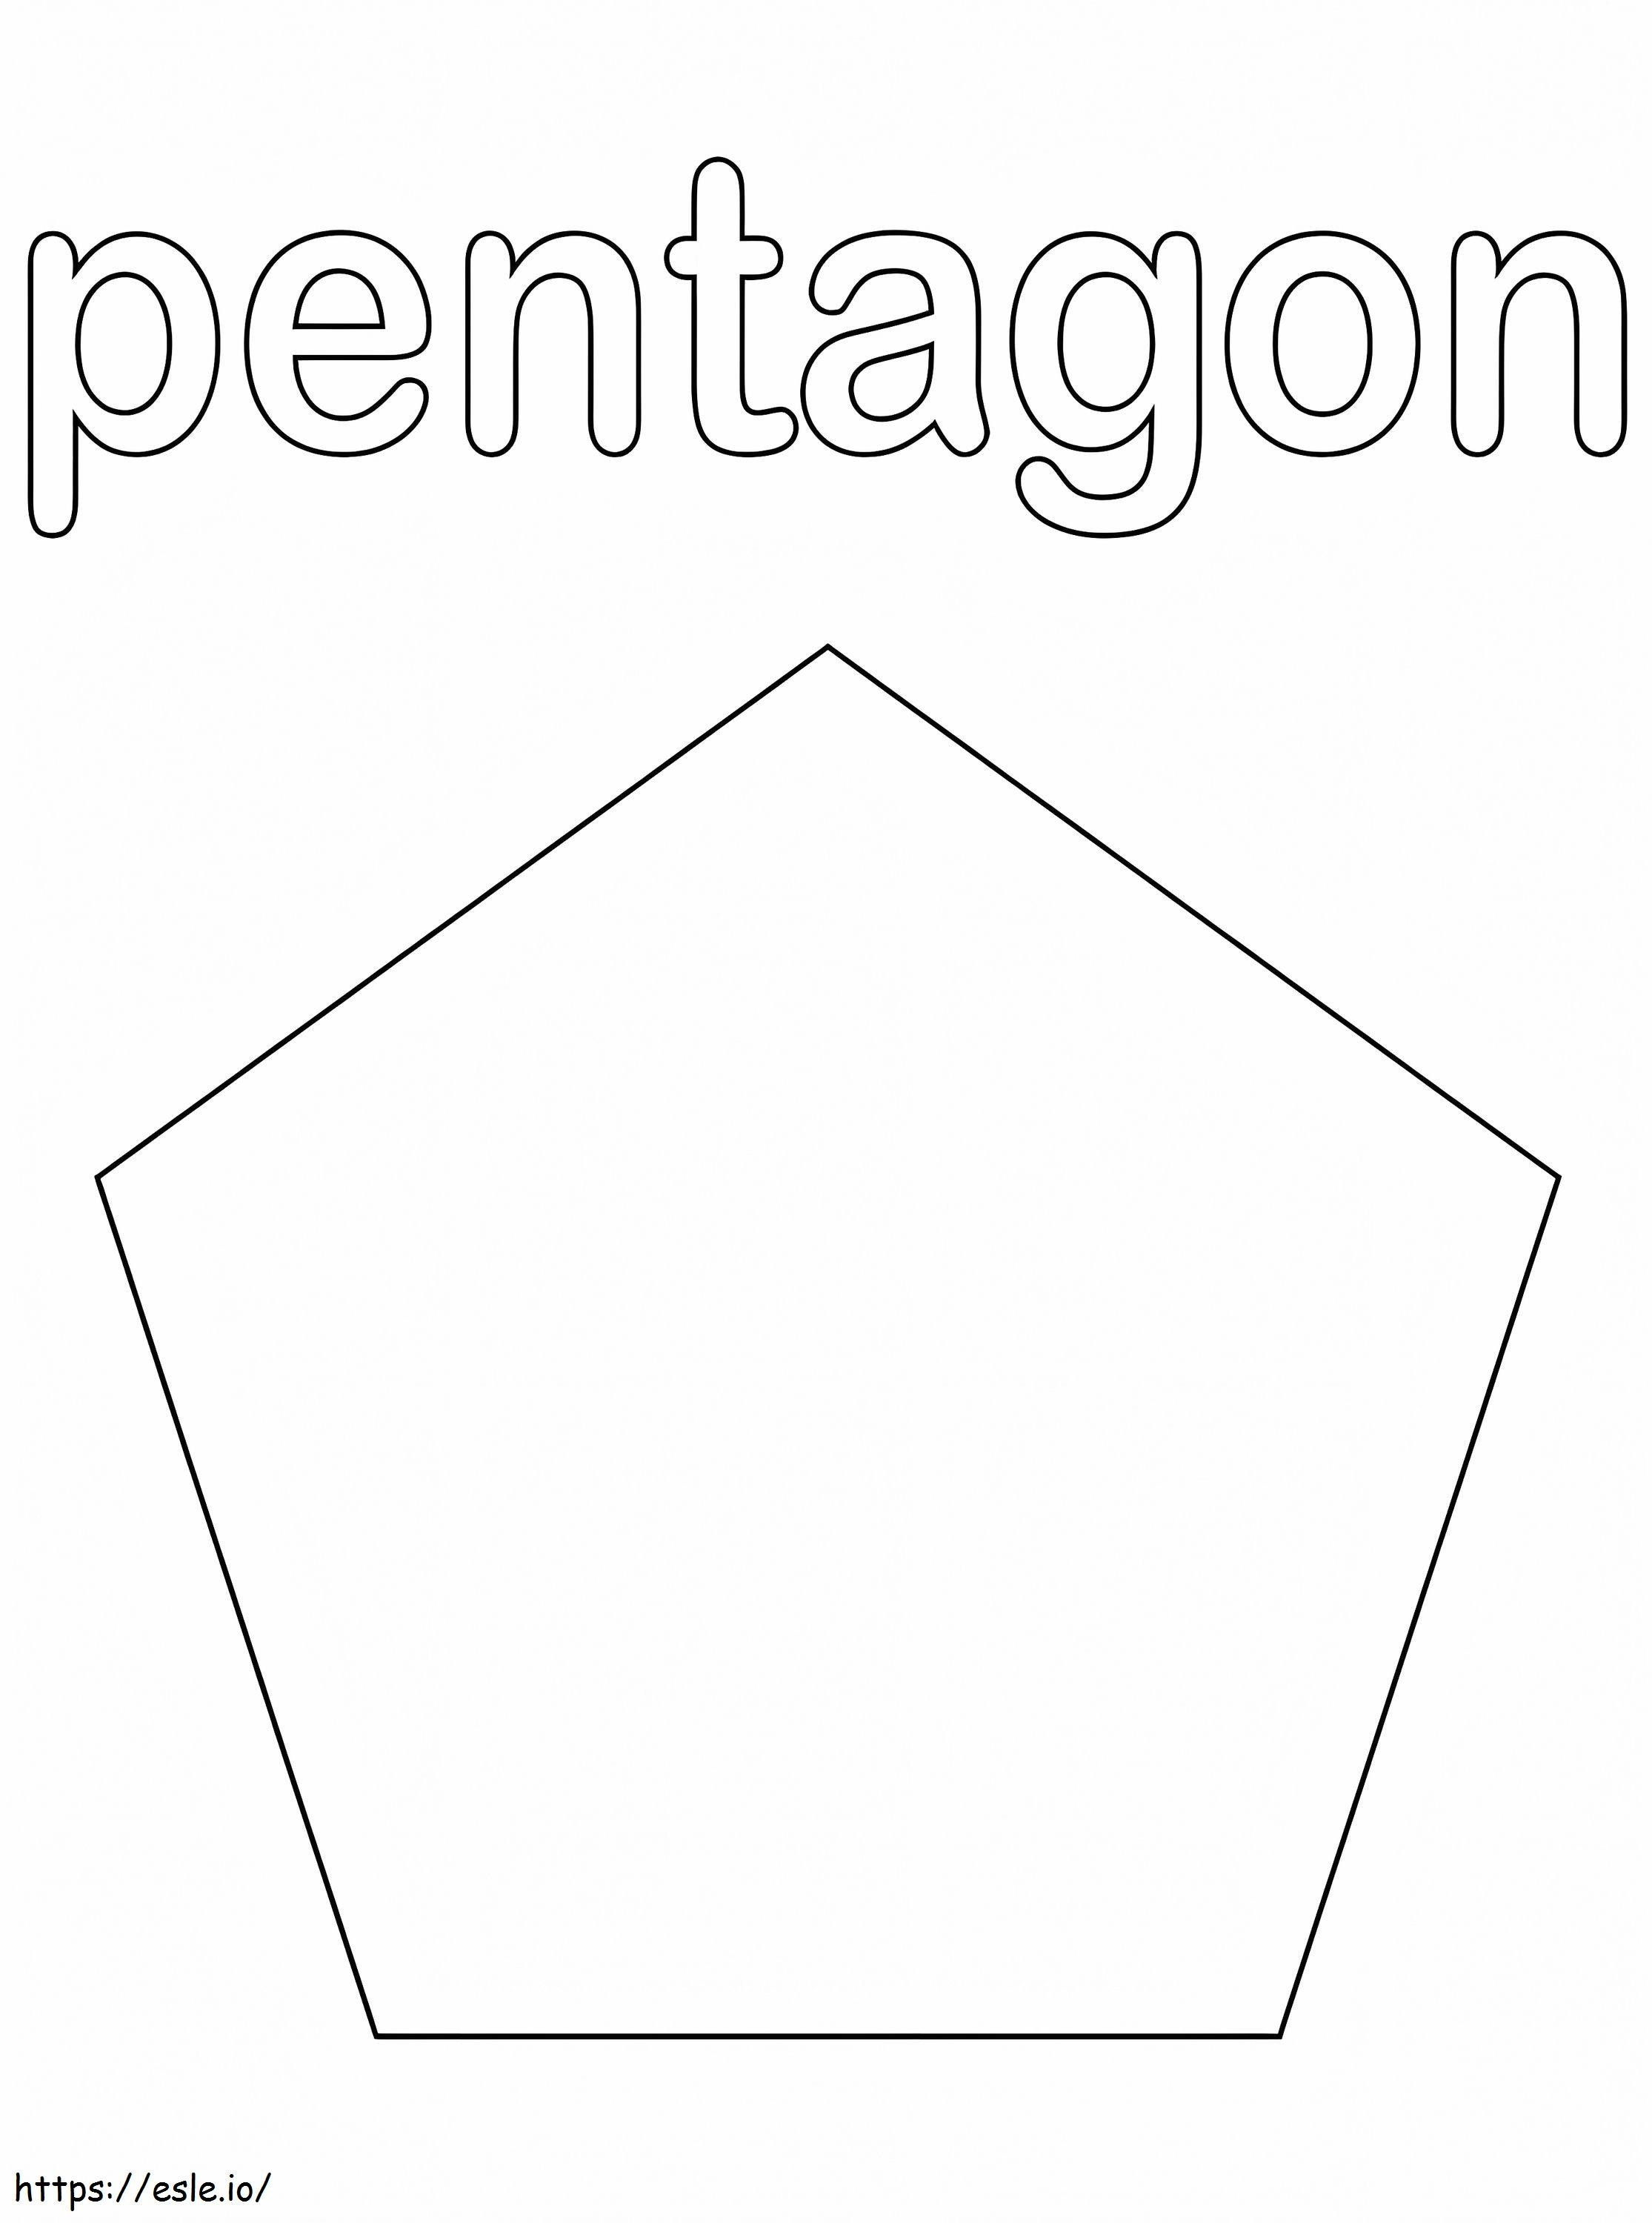 Pentagon ausmalbilder